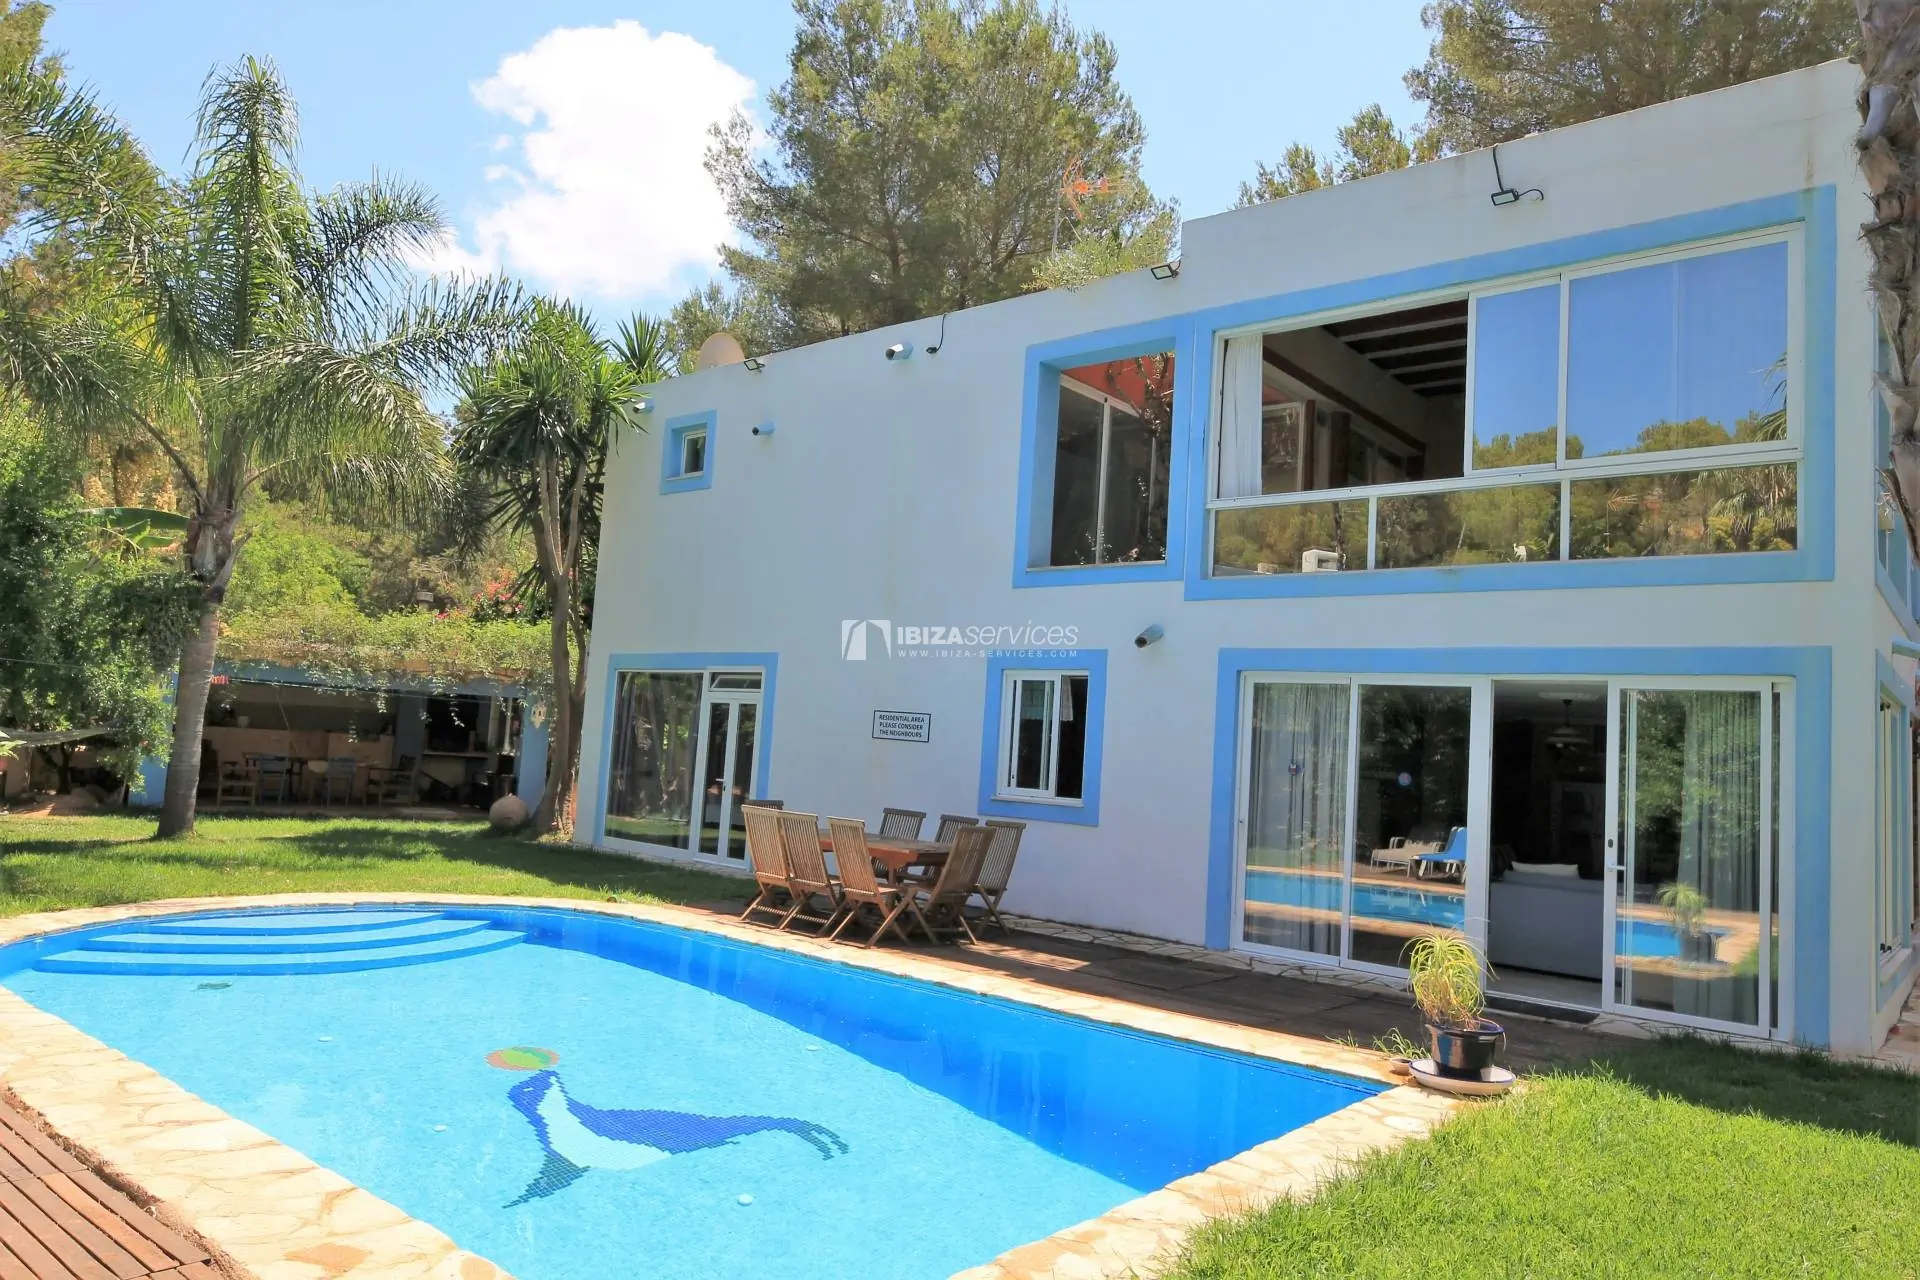 Casa de 6 dormitorios en venta cerca de la ciudad de Ibiza